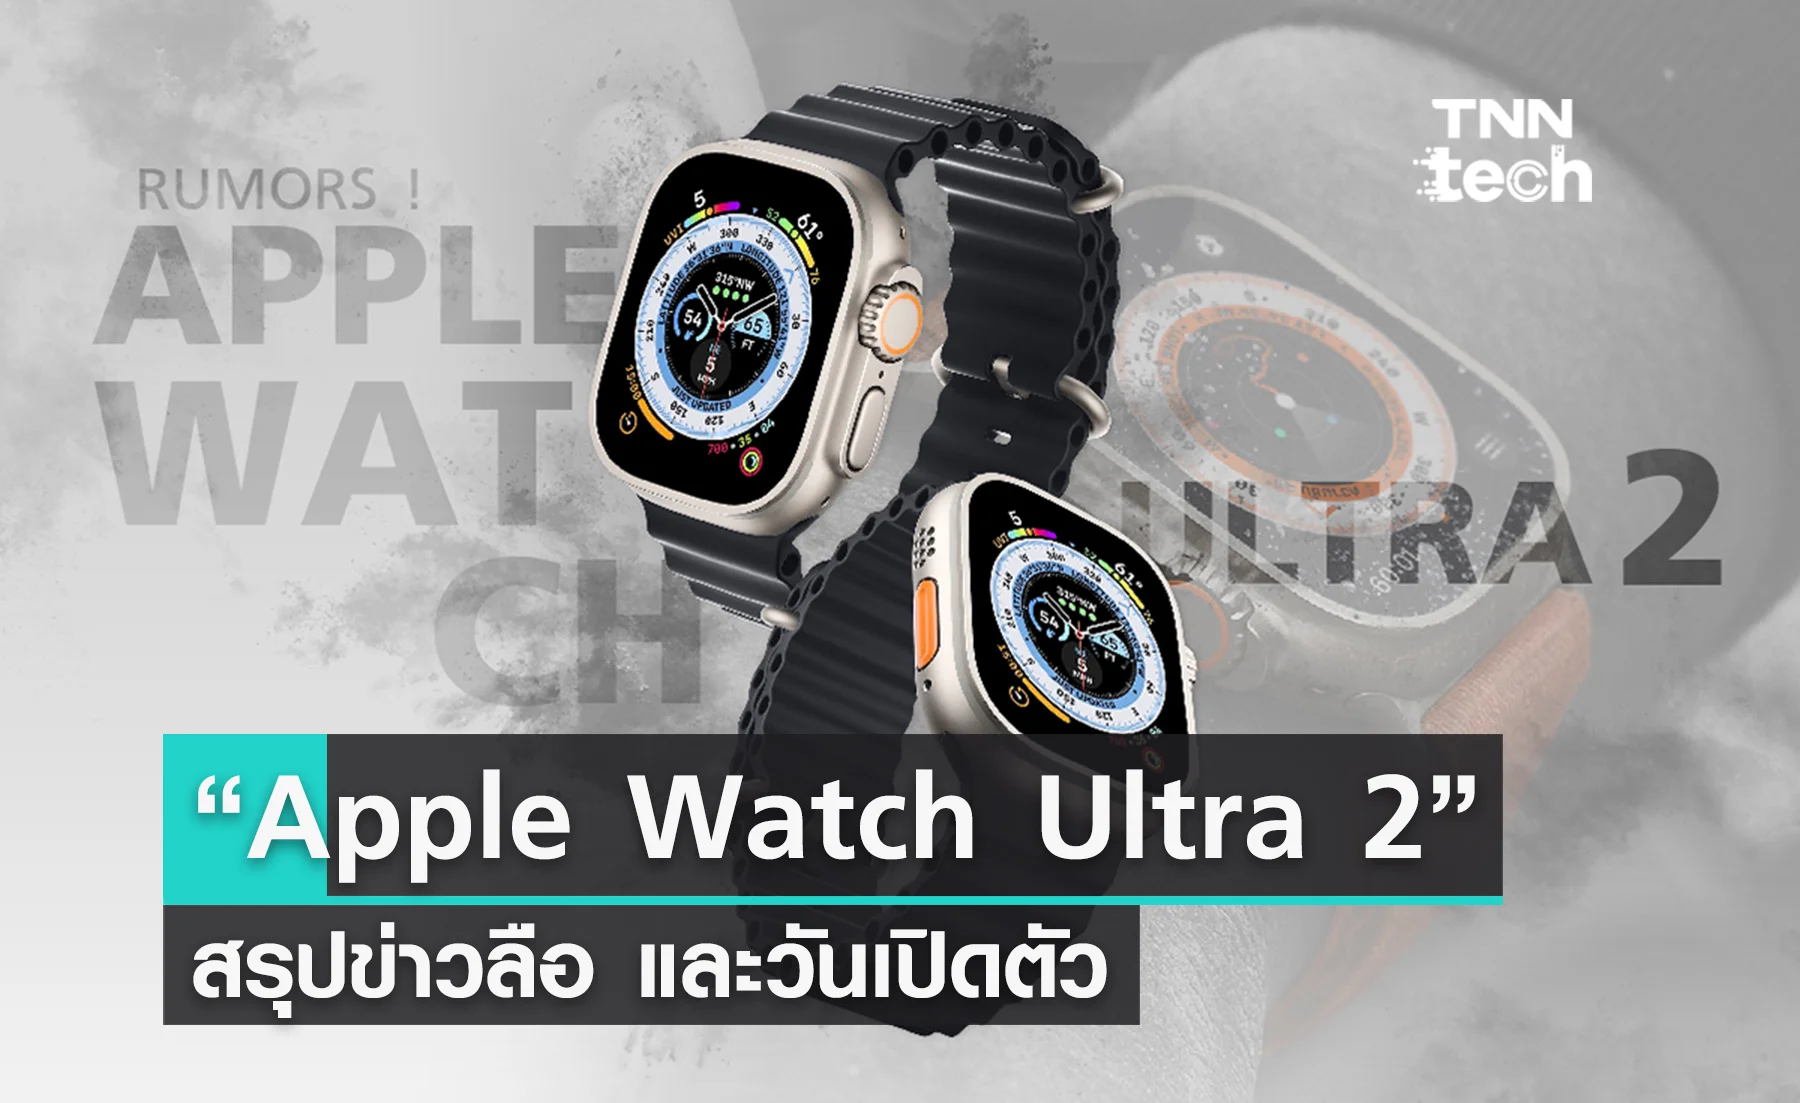 ส่องสเปกจากข่าวลือ Apple Watch Ultra 2 ที่อาจจะมา 12 กันยายนนี้ !?